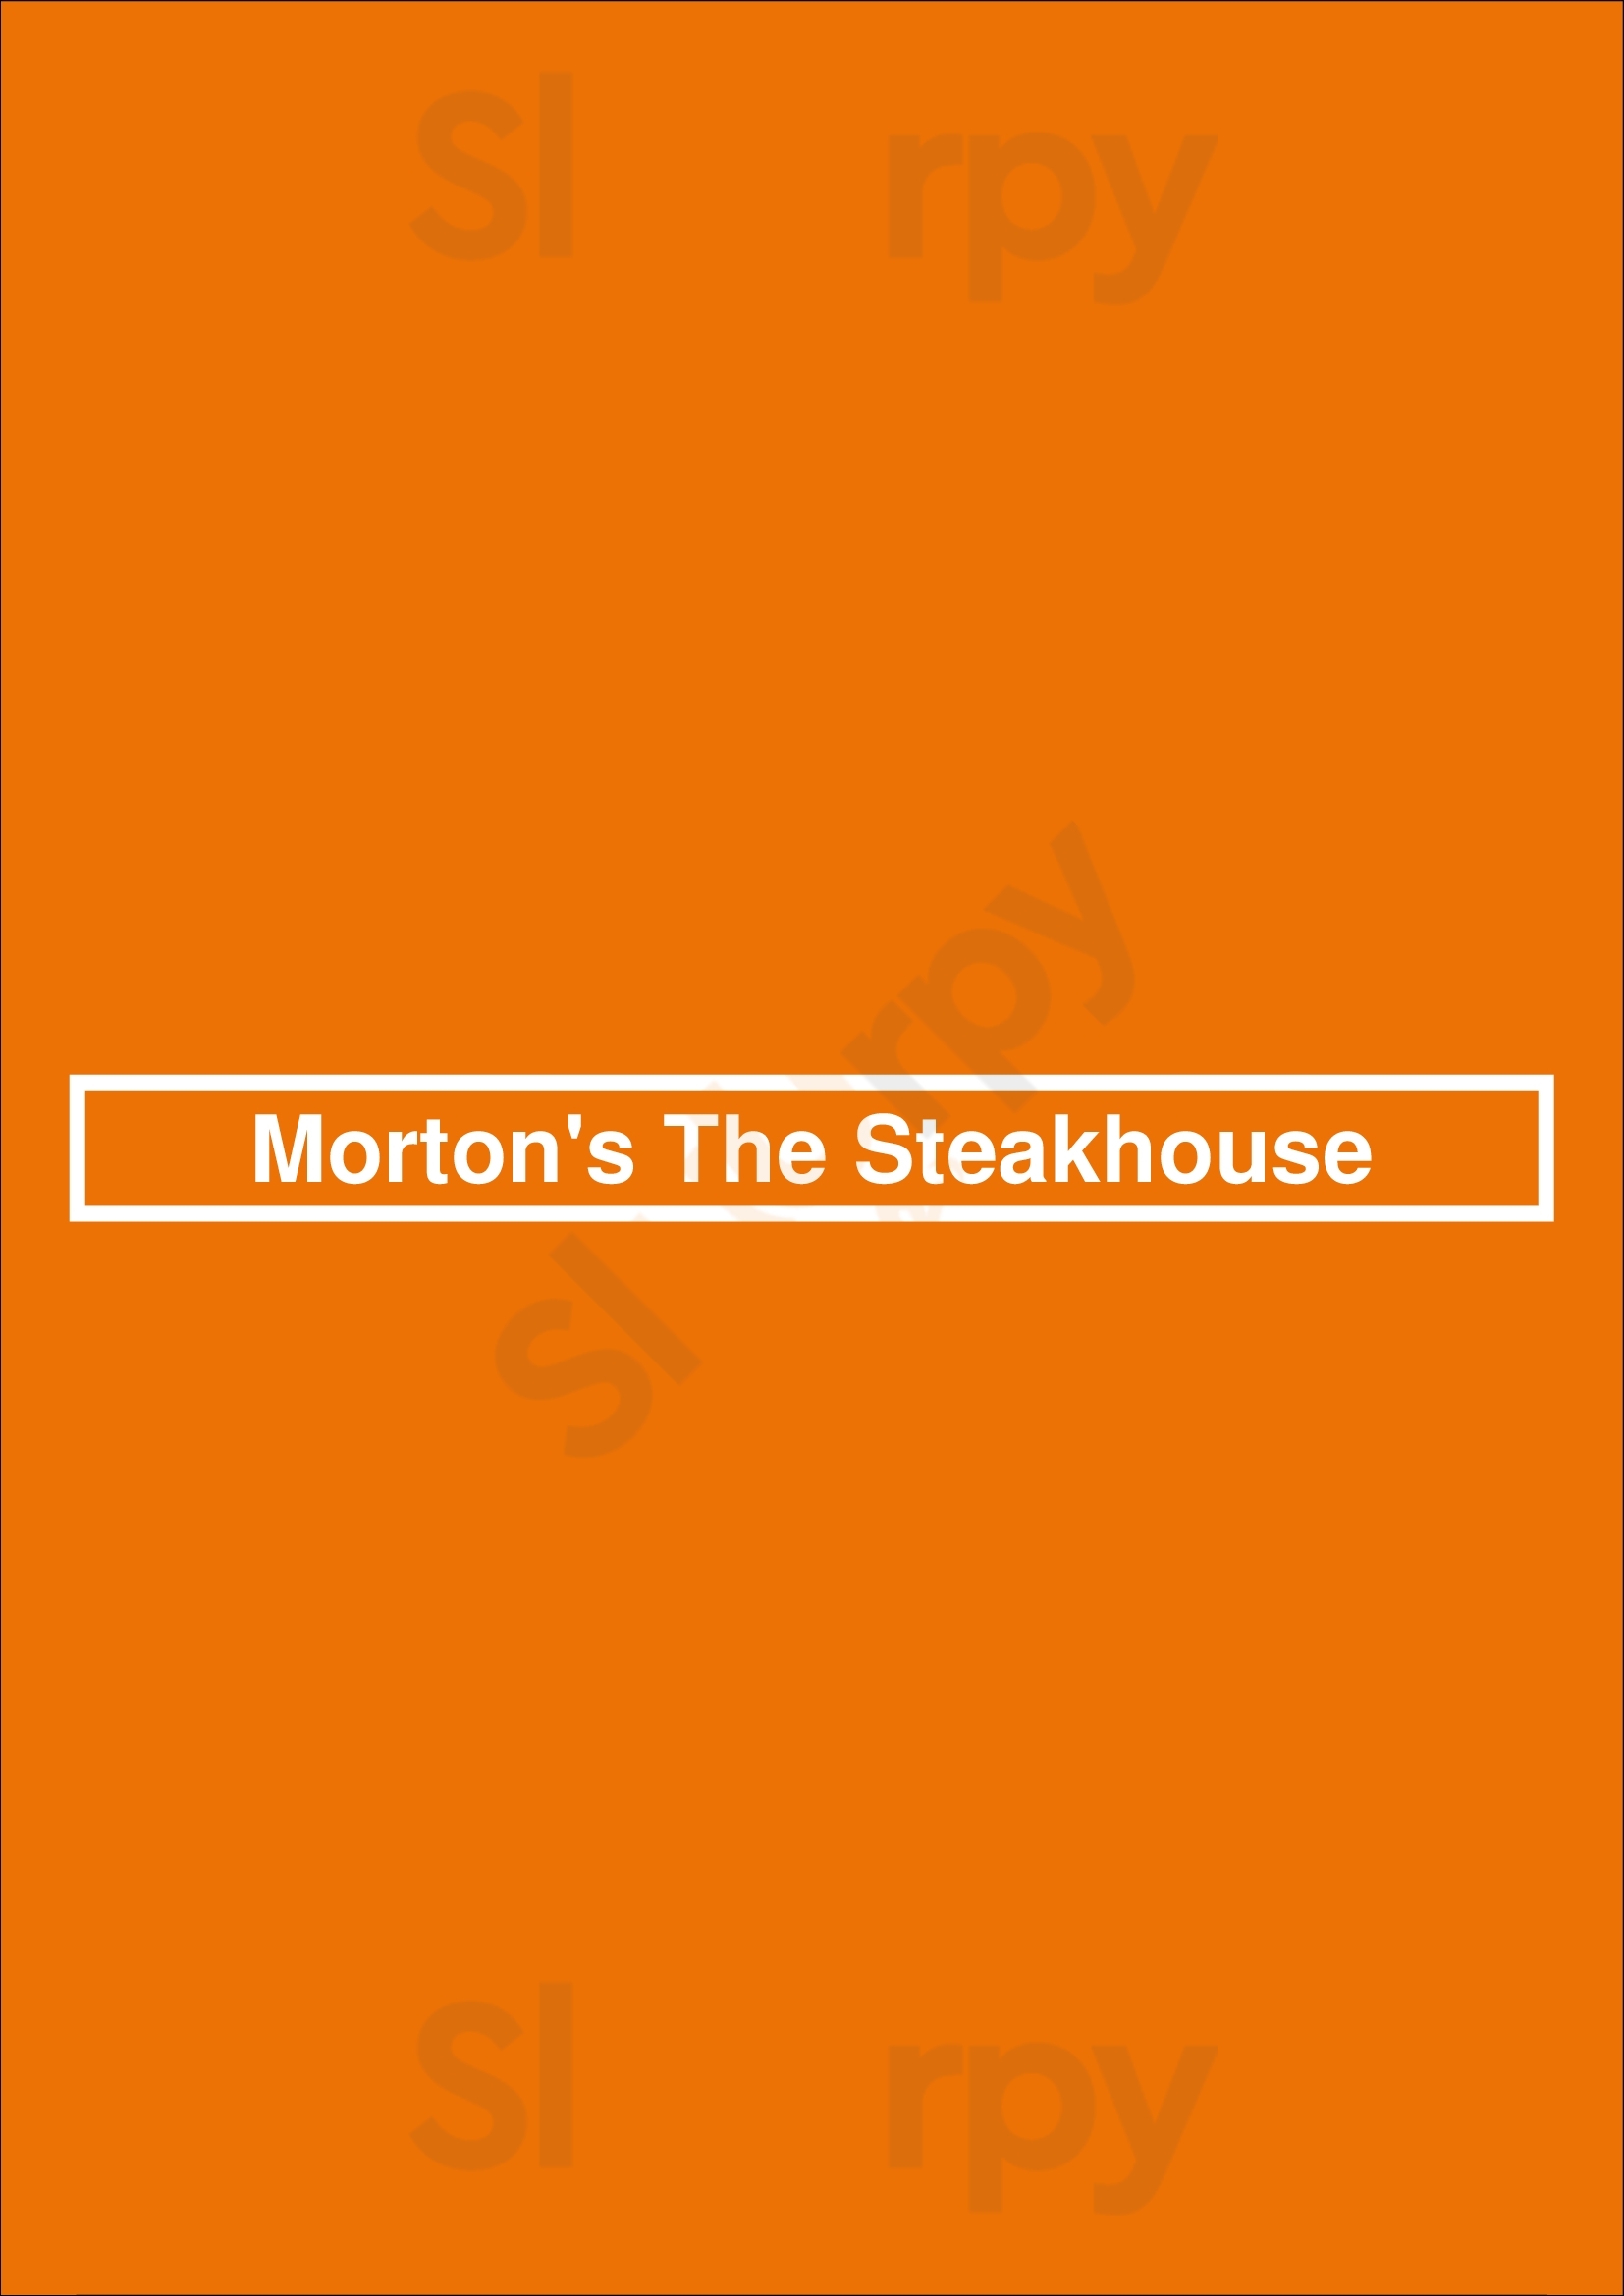 Morton's The Steakhouse Los Angeles Menu - 1